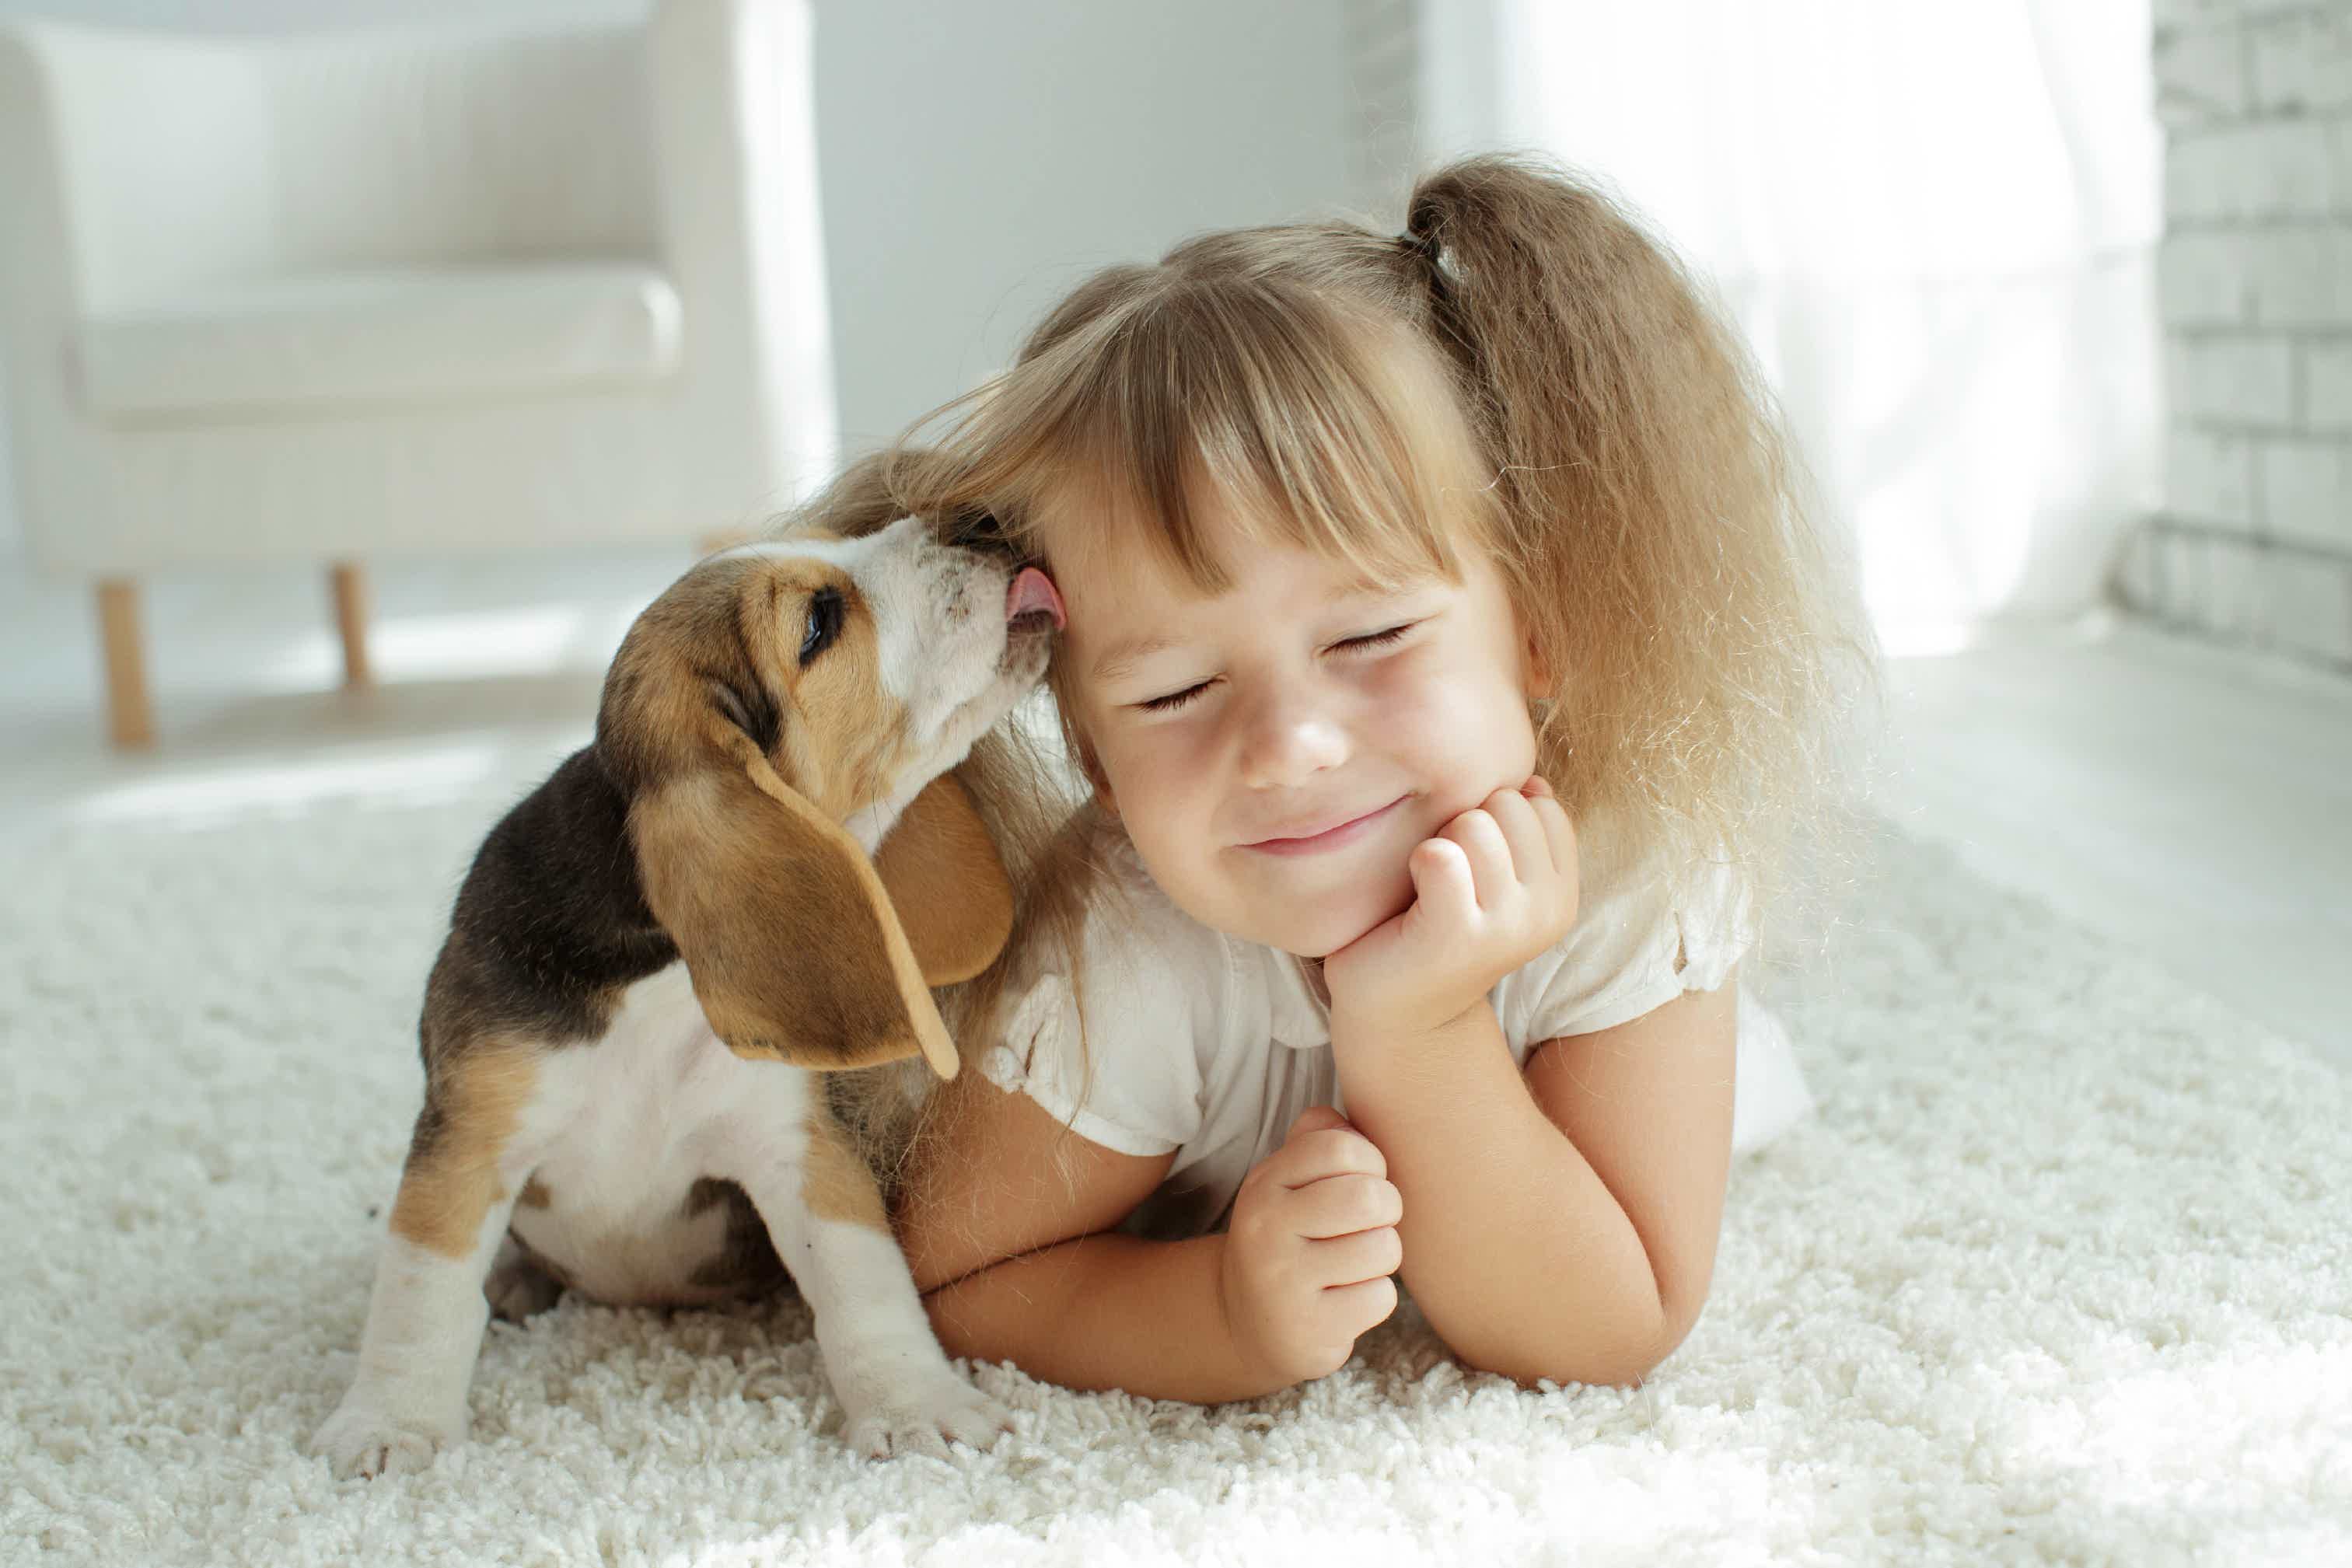 Afinal, vale a pena ter um pet em casa? Fonte: AdobeStock.